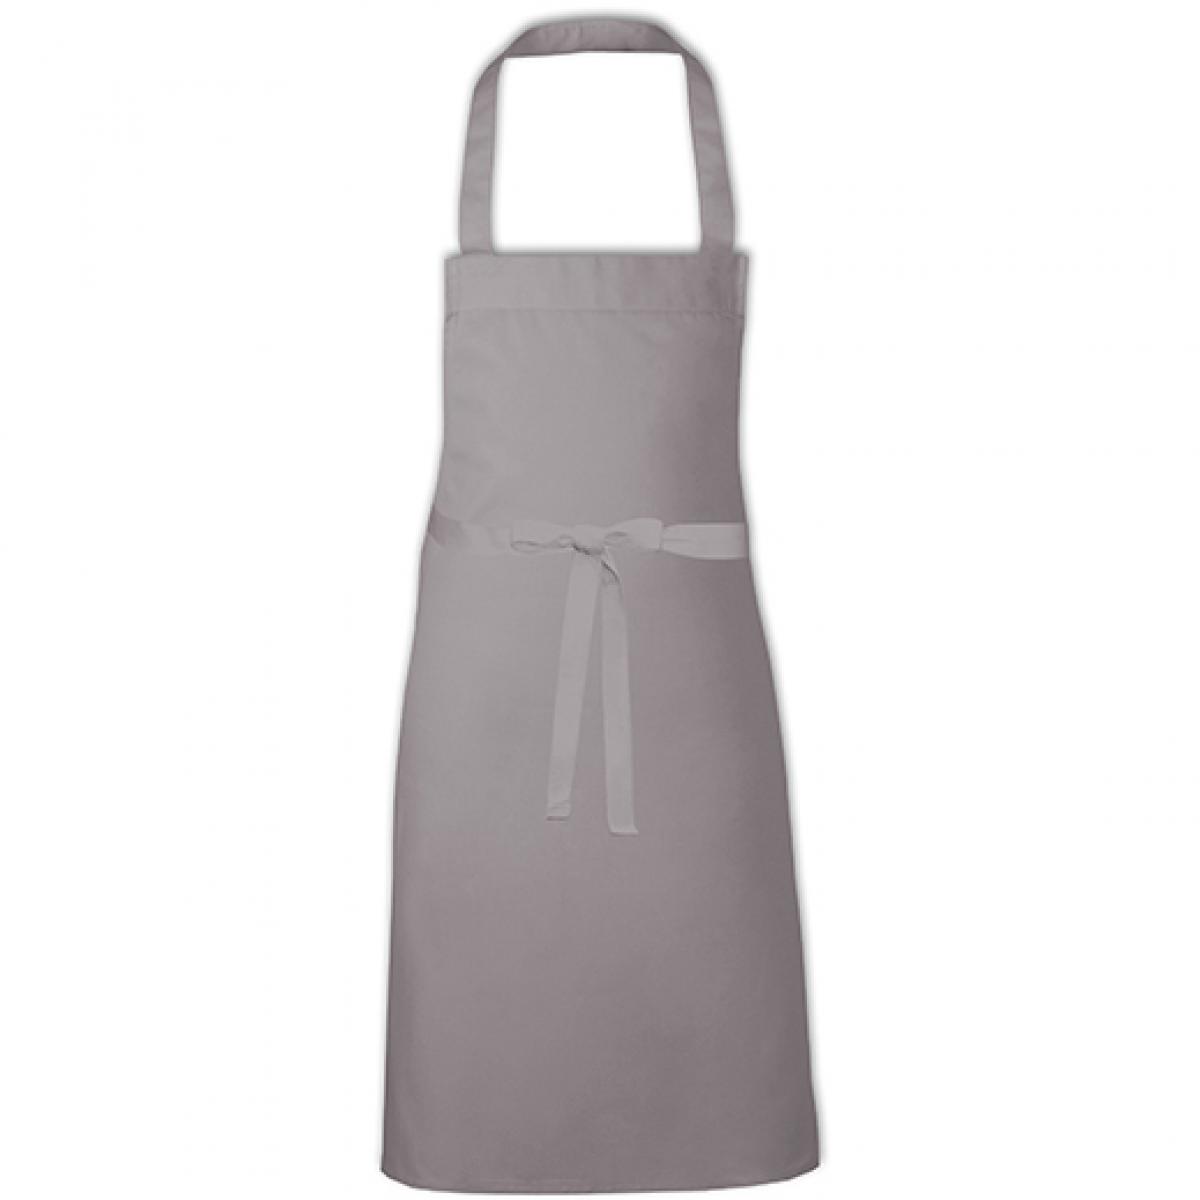 Hersteller: Link Kitchen Wear Herstellernummer: BBQC8070 Artikelbezeichnung: Cotton Barbecue Apron - Grillschürze Farbe: Mouse Grey